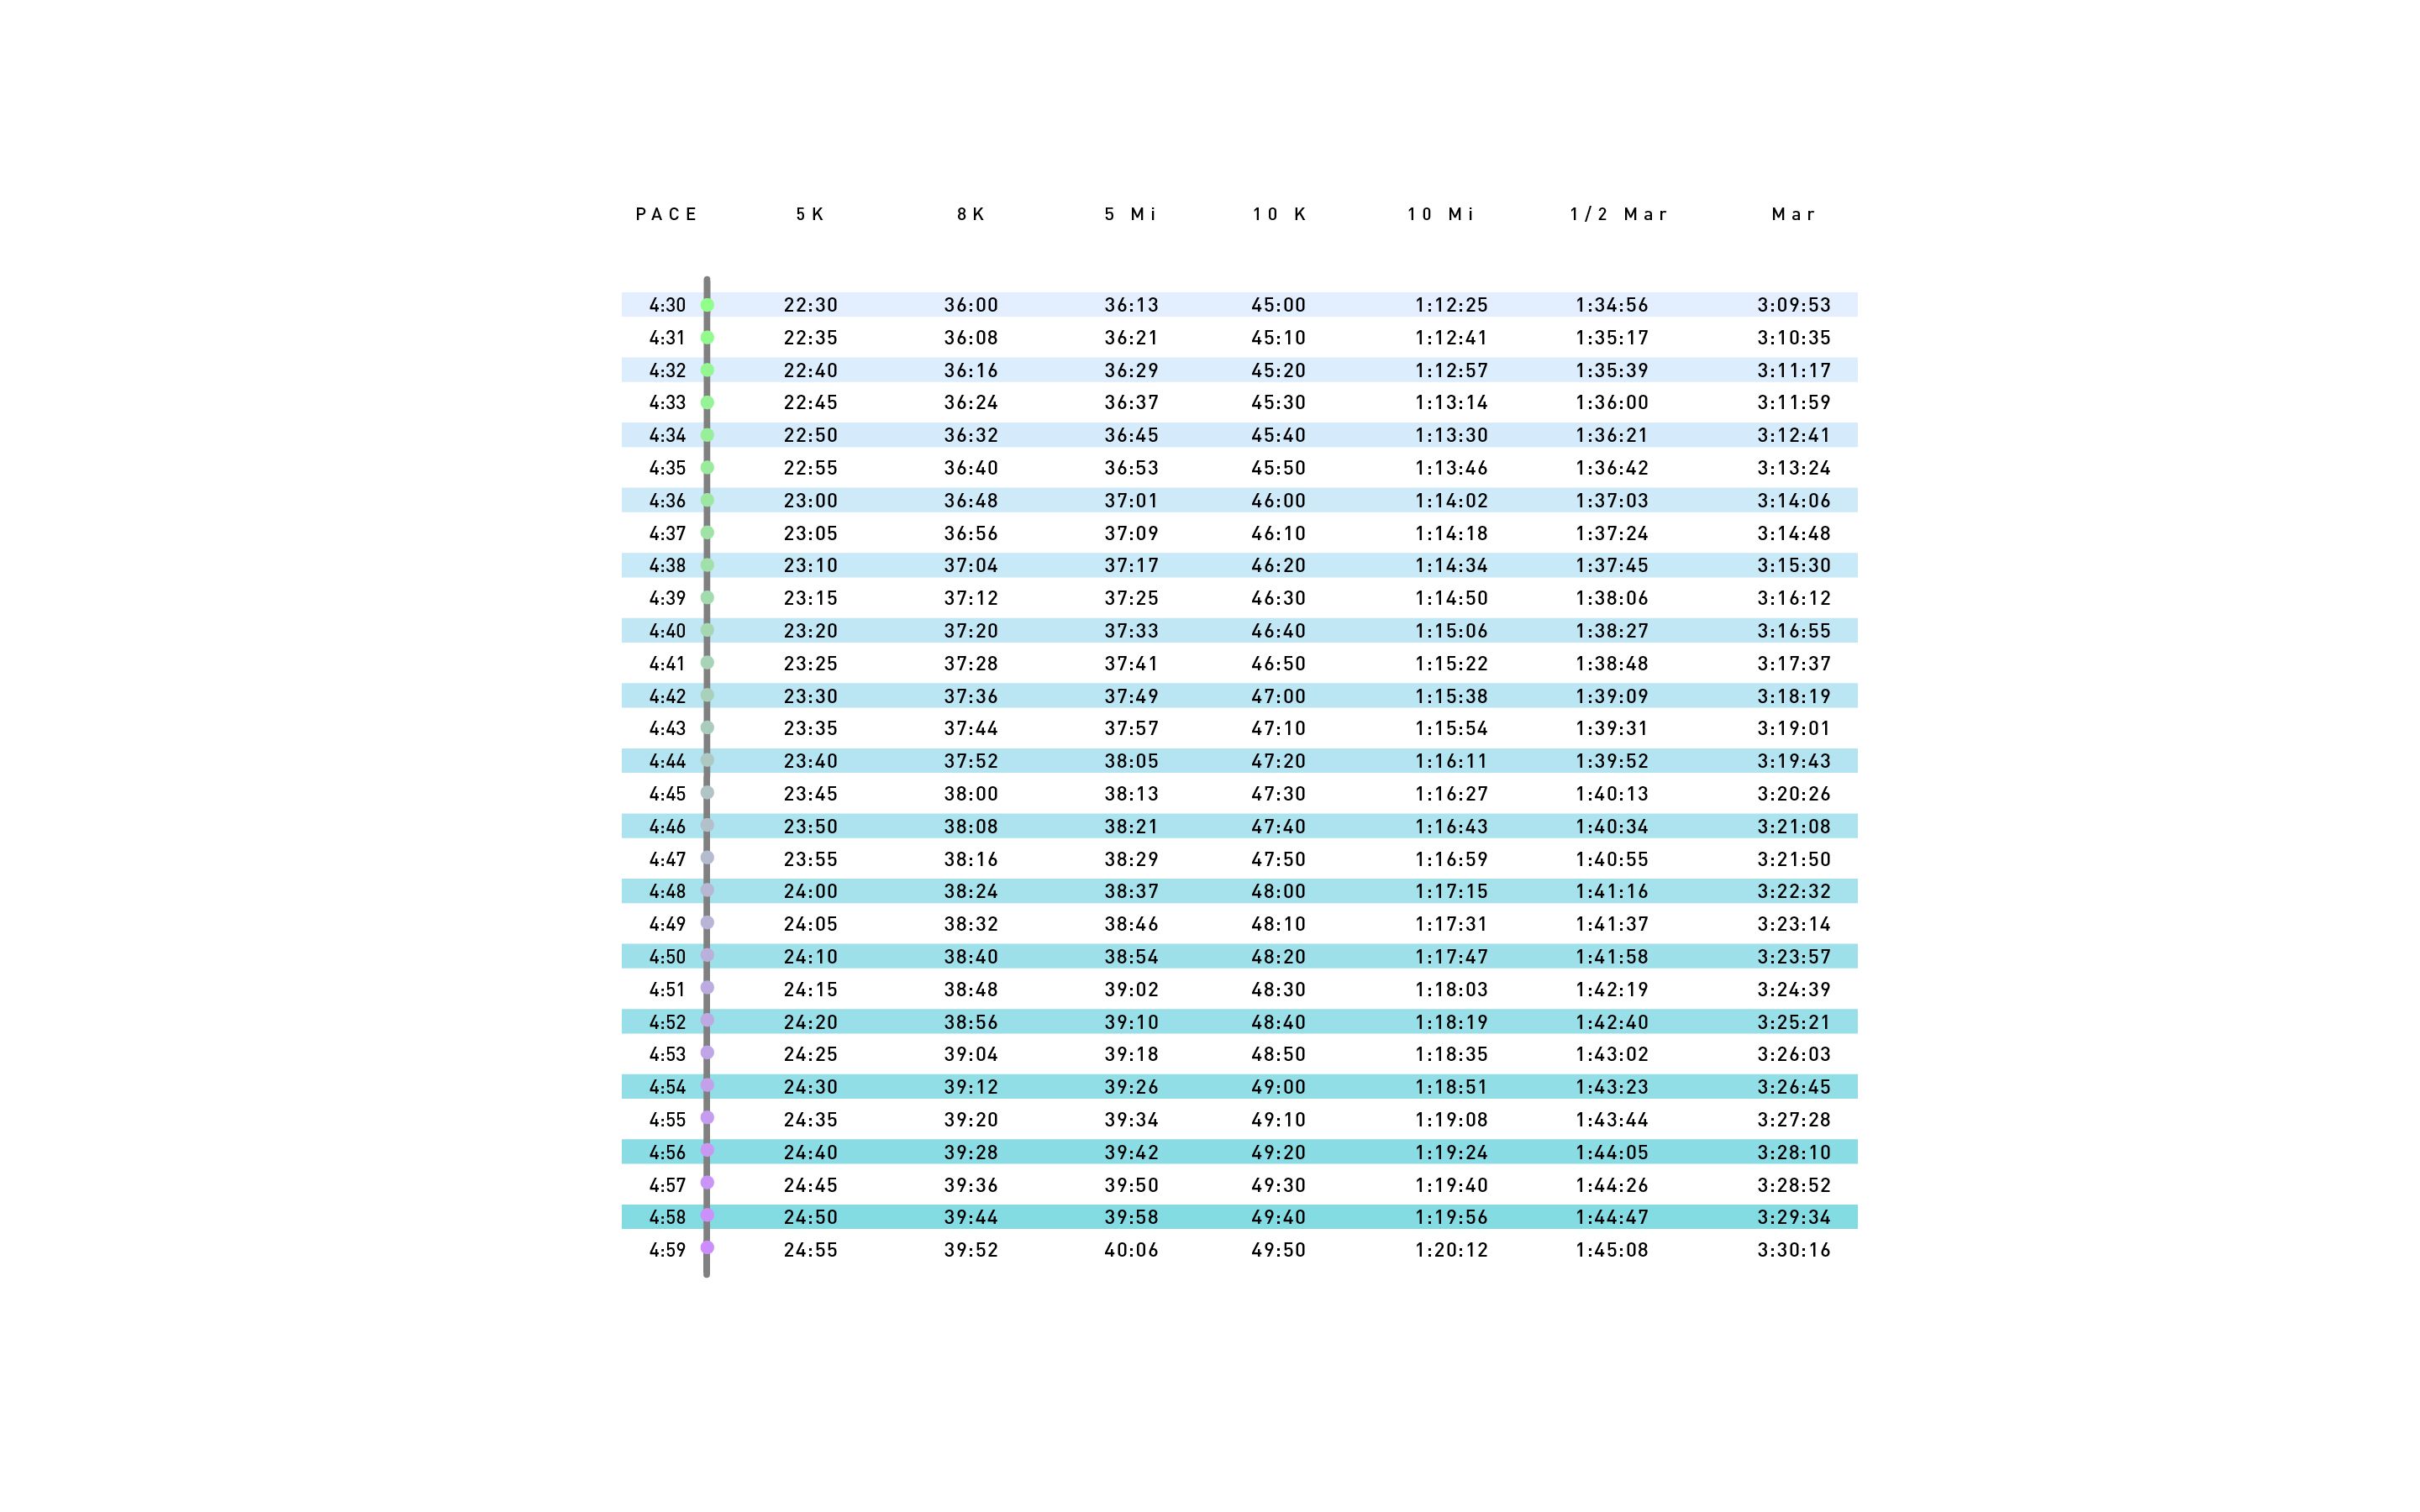 Marathon Split Chart